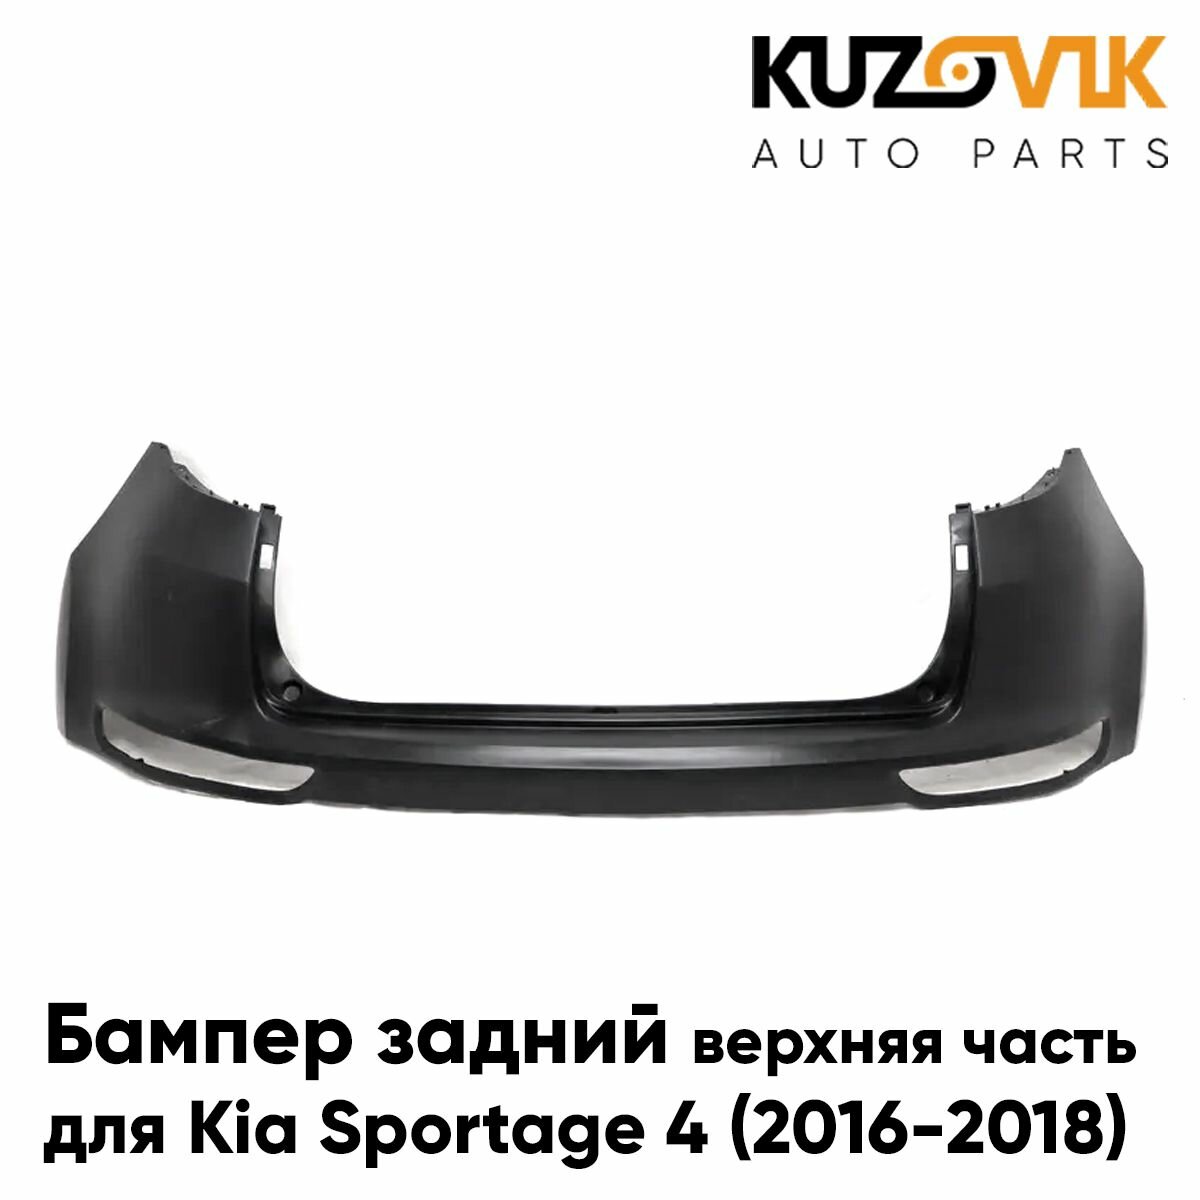 Бампер задний для Киа Спортейдж Kia Sportage 4 (2016-2018) верхняя часть